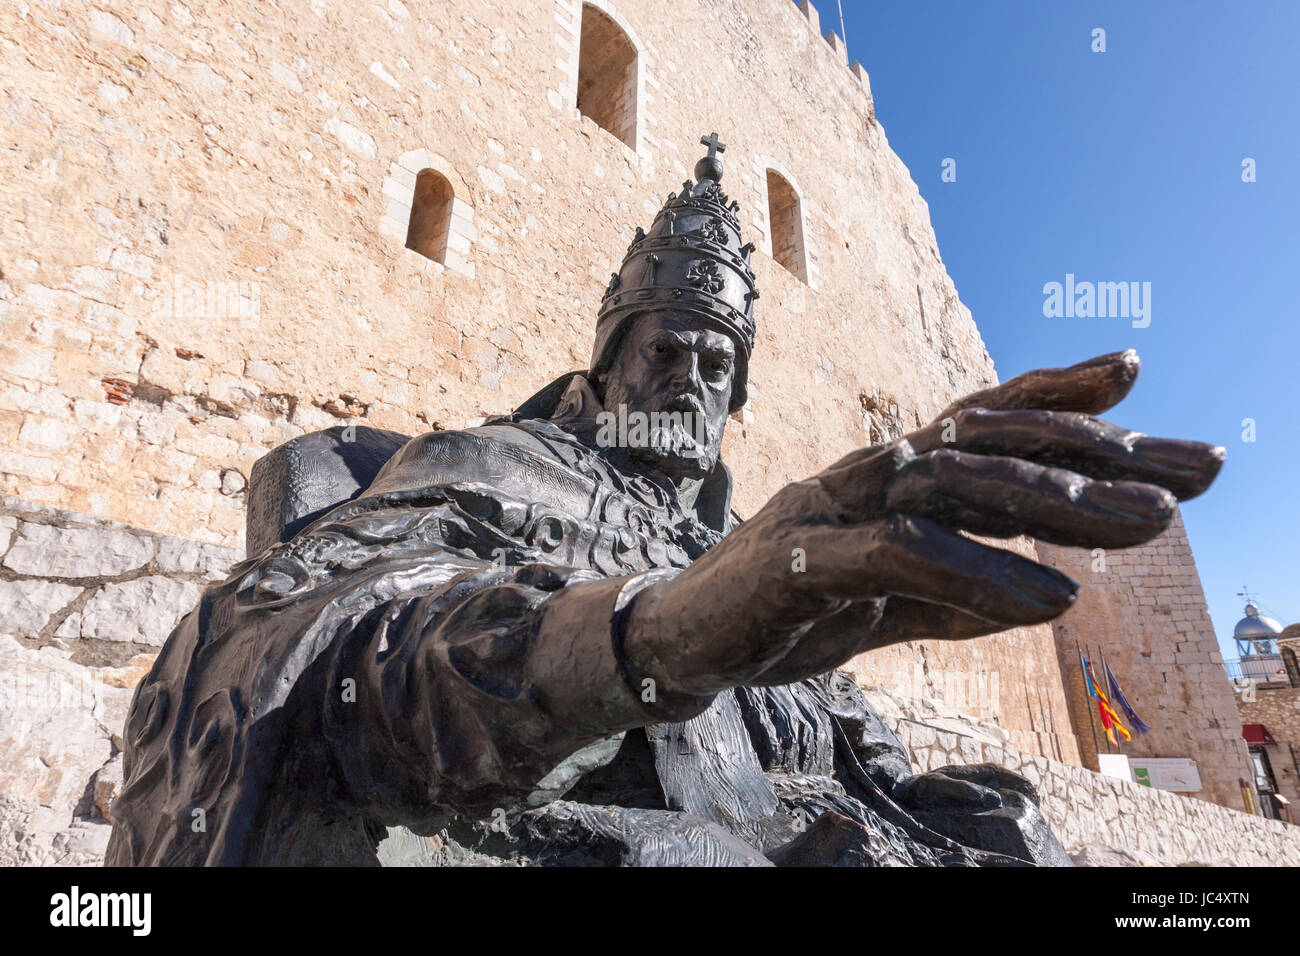 Papa Luna, Benedicto XIII , monumento por Sergio Blanco, Peñíscola, provincia de Castellón, Comunidad Valenciana, España. Foto de stock